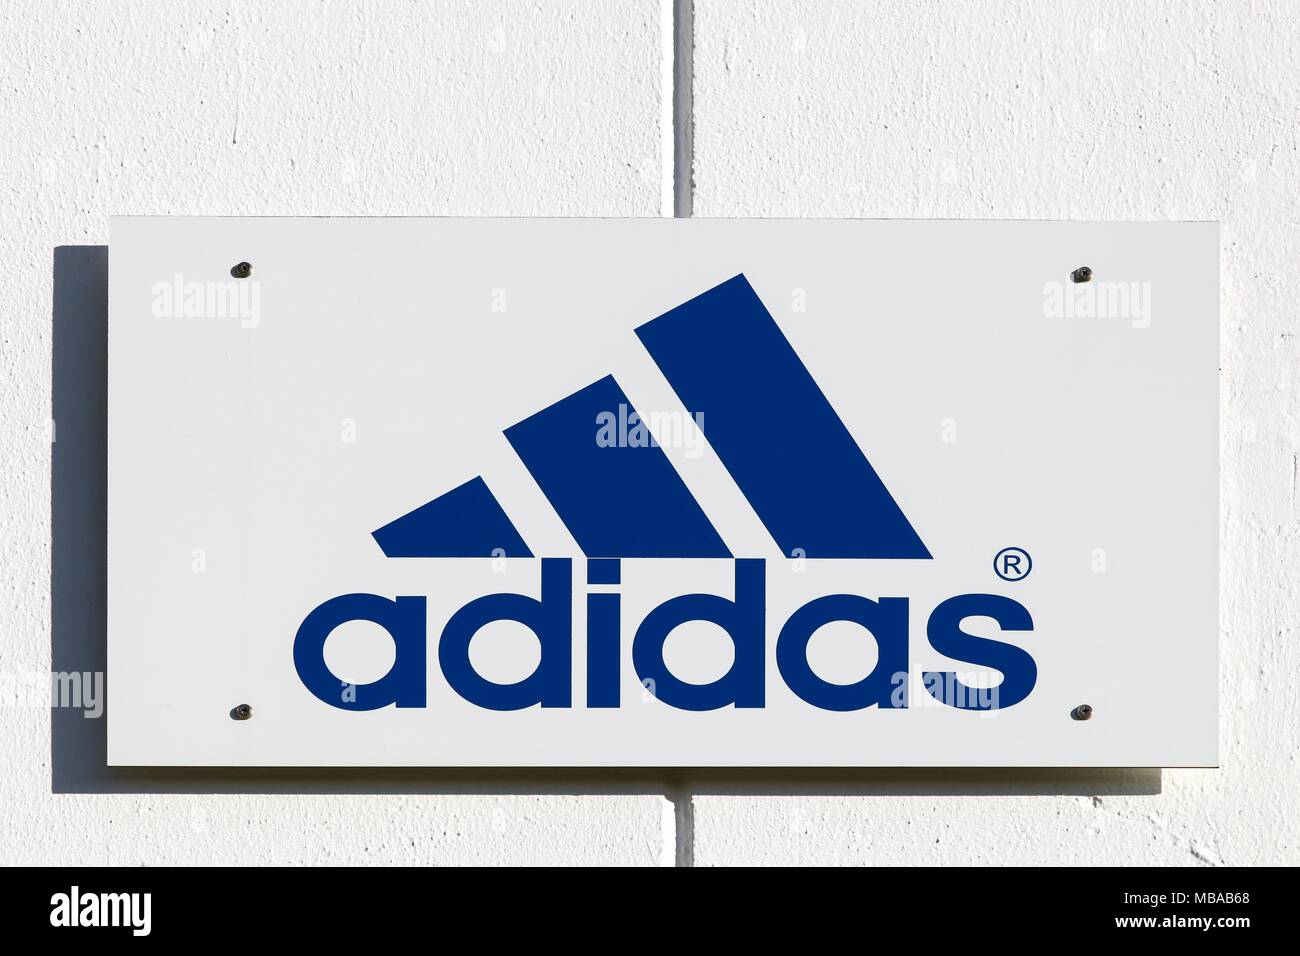 nieve Lionel Green Street cocinero Merignac, Francia - Junio 5, 2017: el logotipo de adidas en una pared.  Adidas es una multinacional alemana que fabrica calzado deportivo, ropa  Fotografía de stock - Alamy